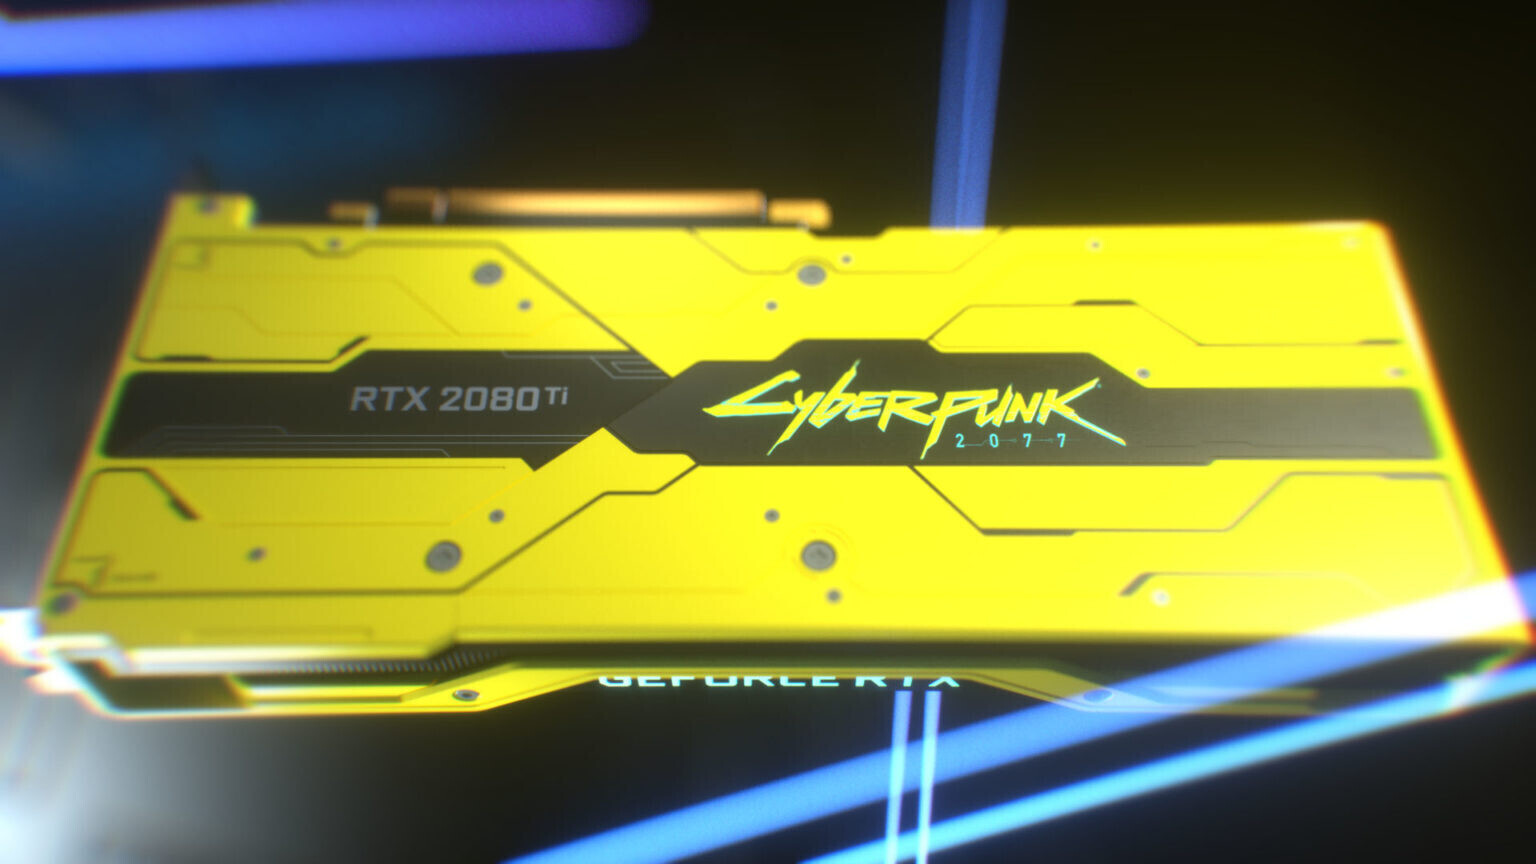 Phiên bản giới hạn Cyberpunk 2077 NVIDIA RTX 2080 Ti đã được bán đấu giá với giá hơn 4000 USD